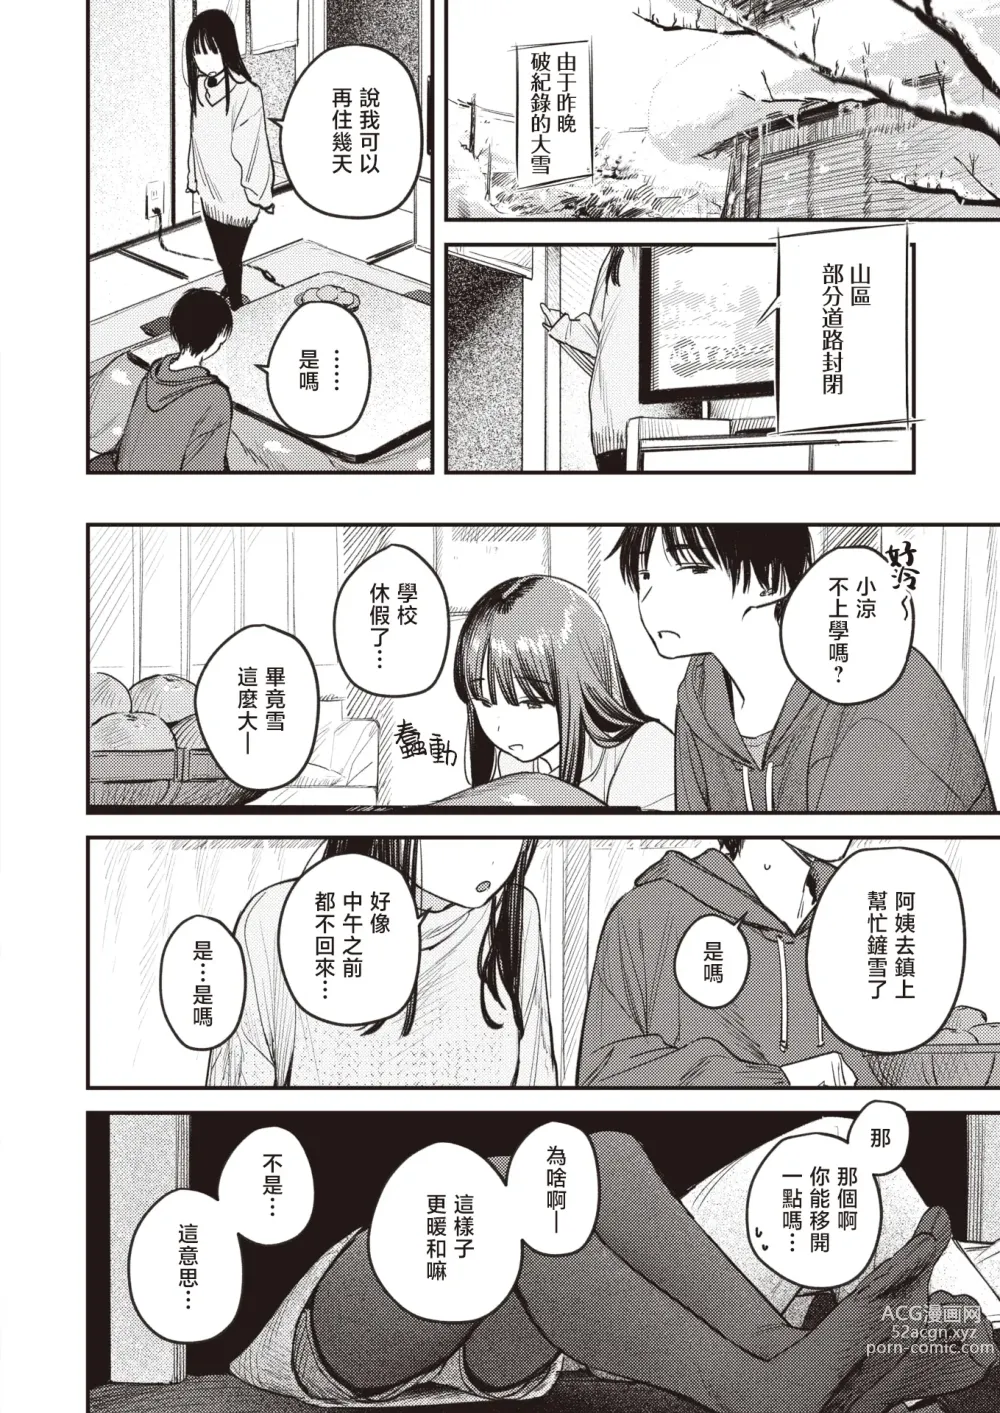 Page 9 of manga 直到雾释冰融